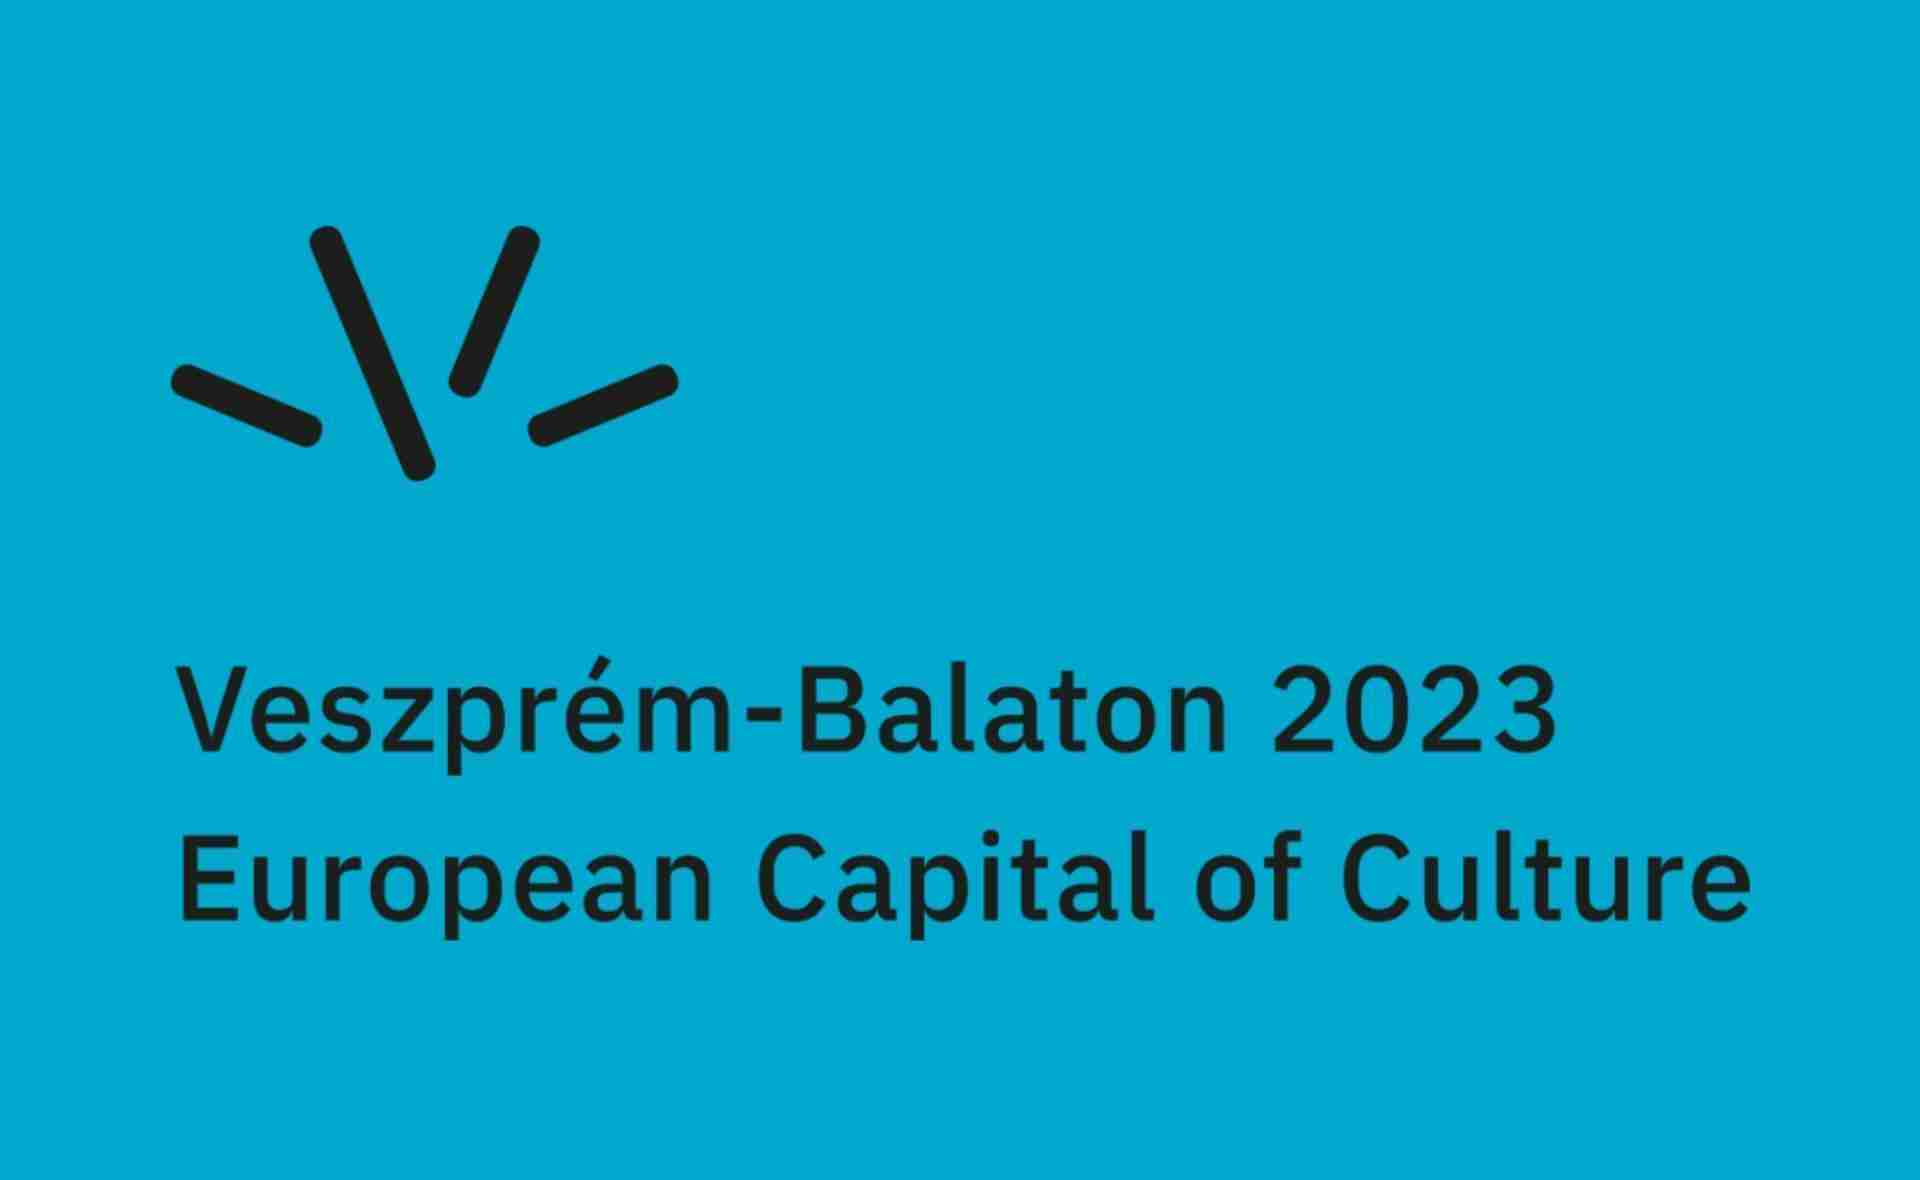 Veszprém Becomes the European Capital of Culture